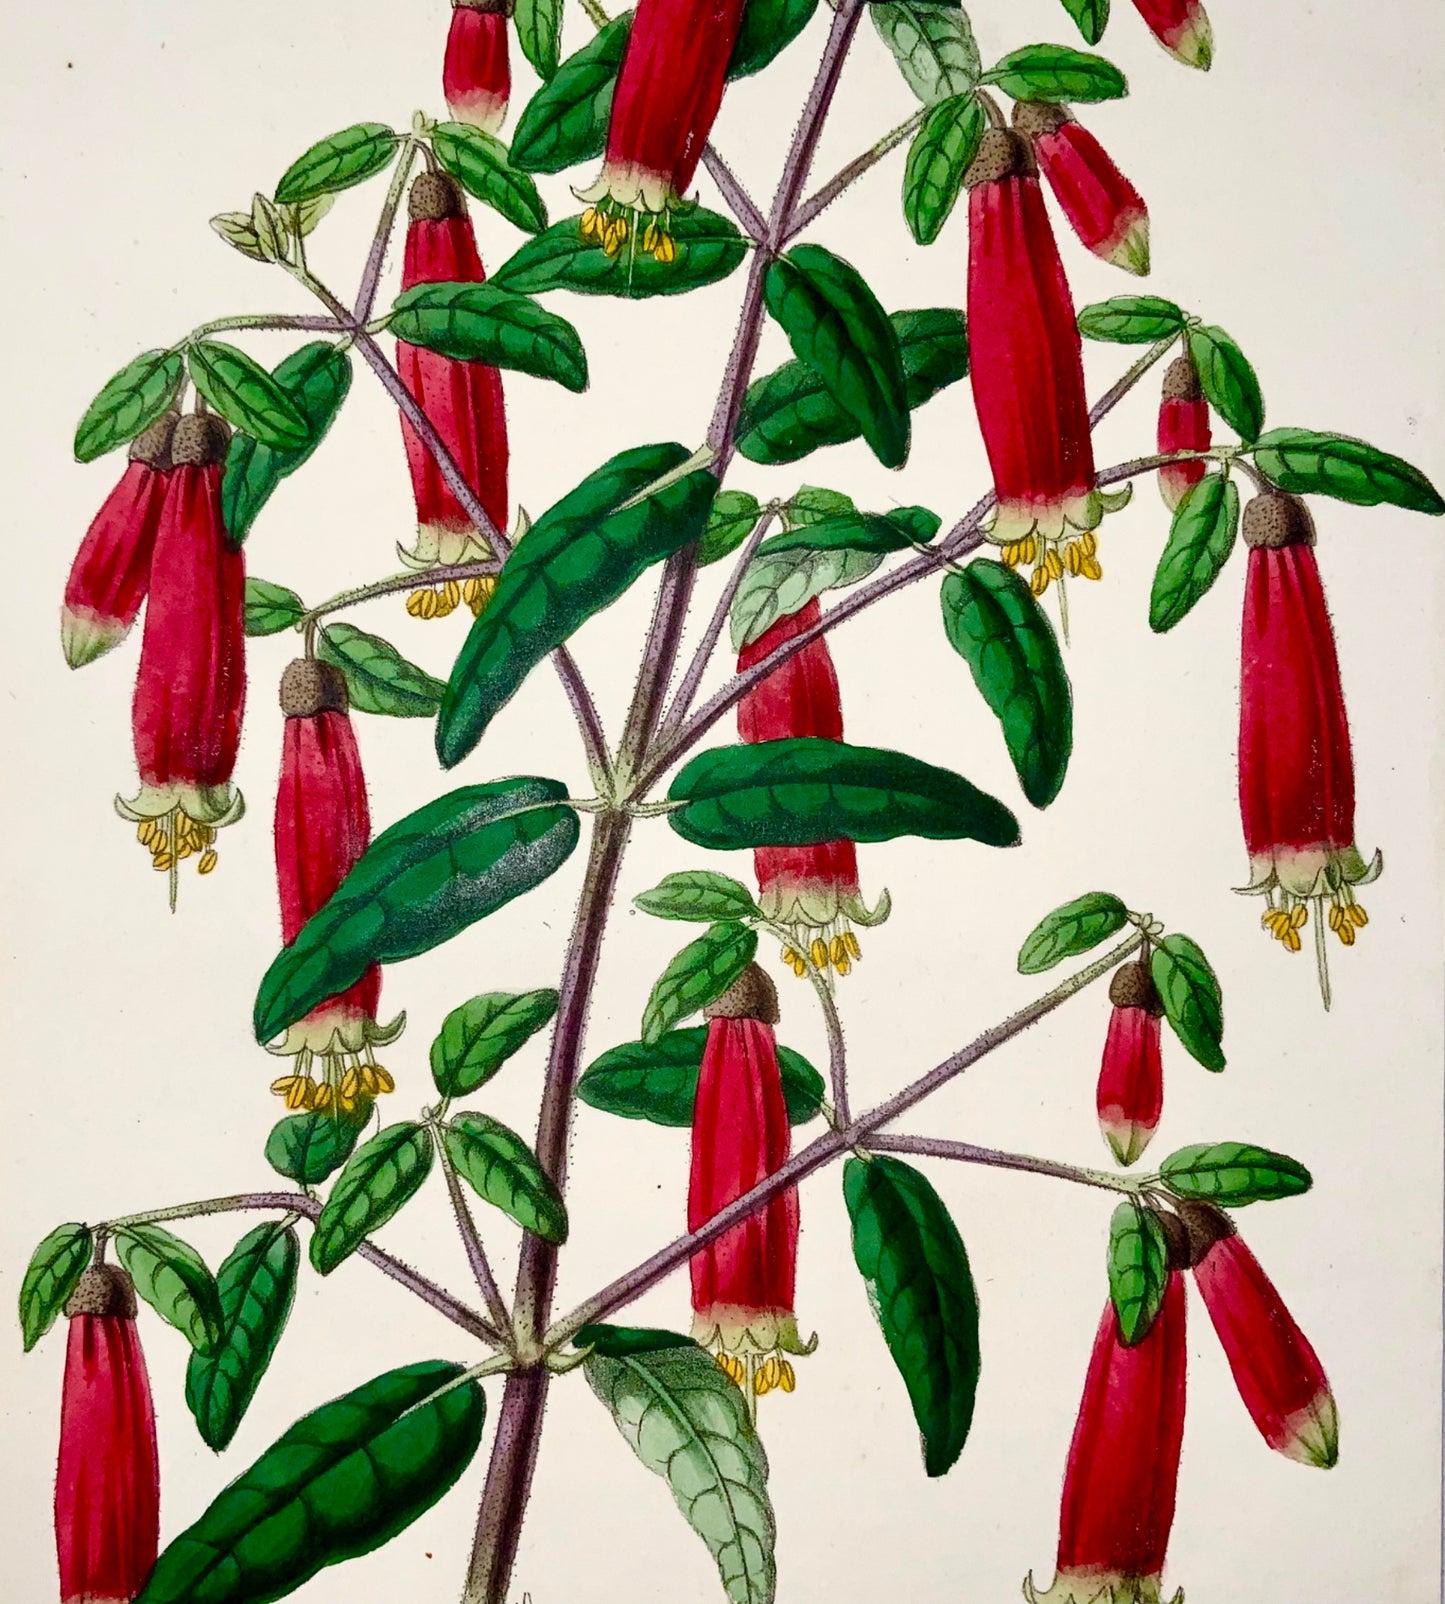 1856 Correa Cardinalis, James Andrews, couleur exquise à la main, botanique